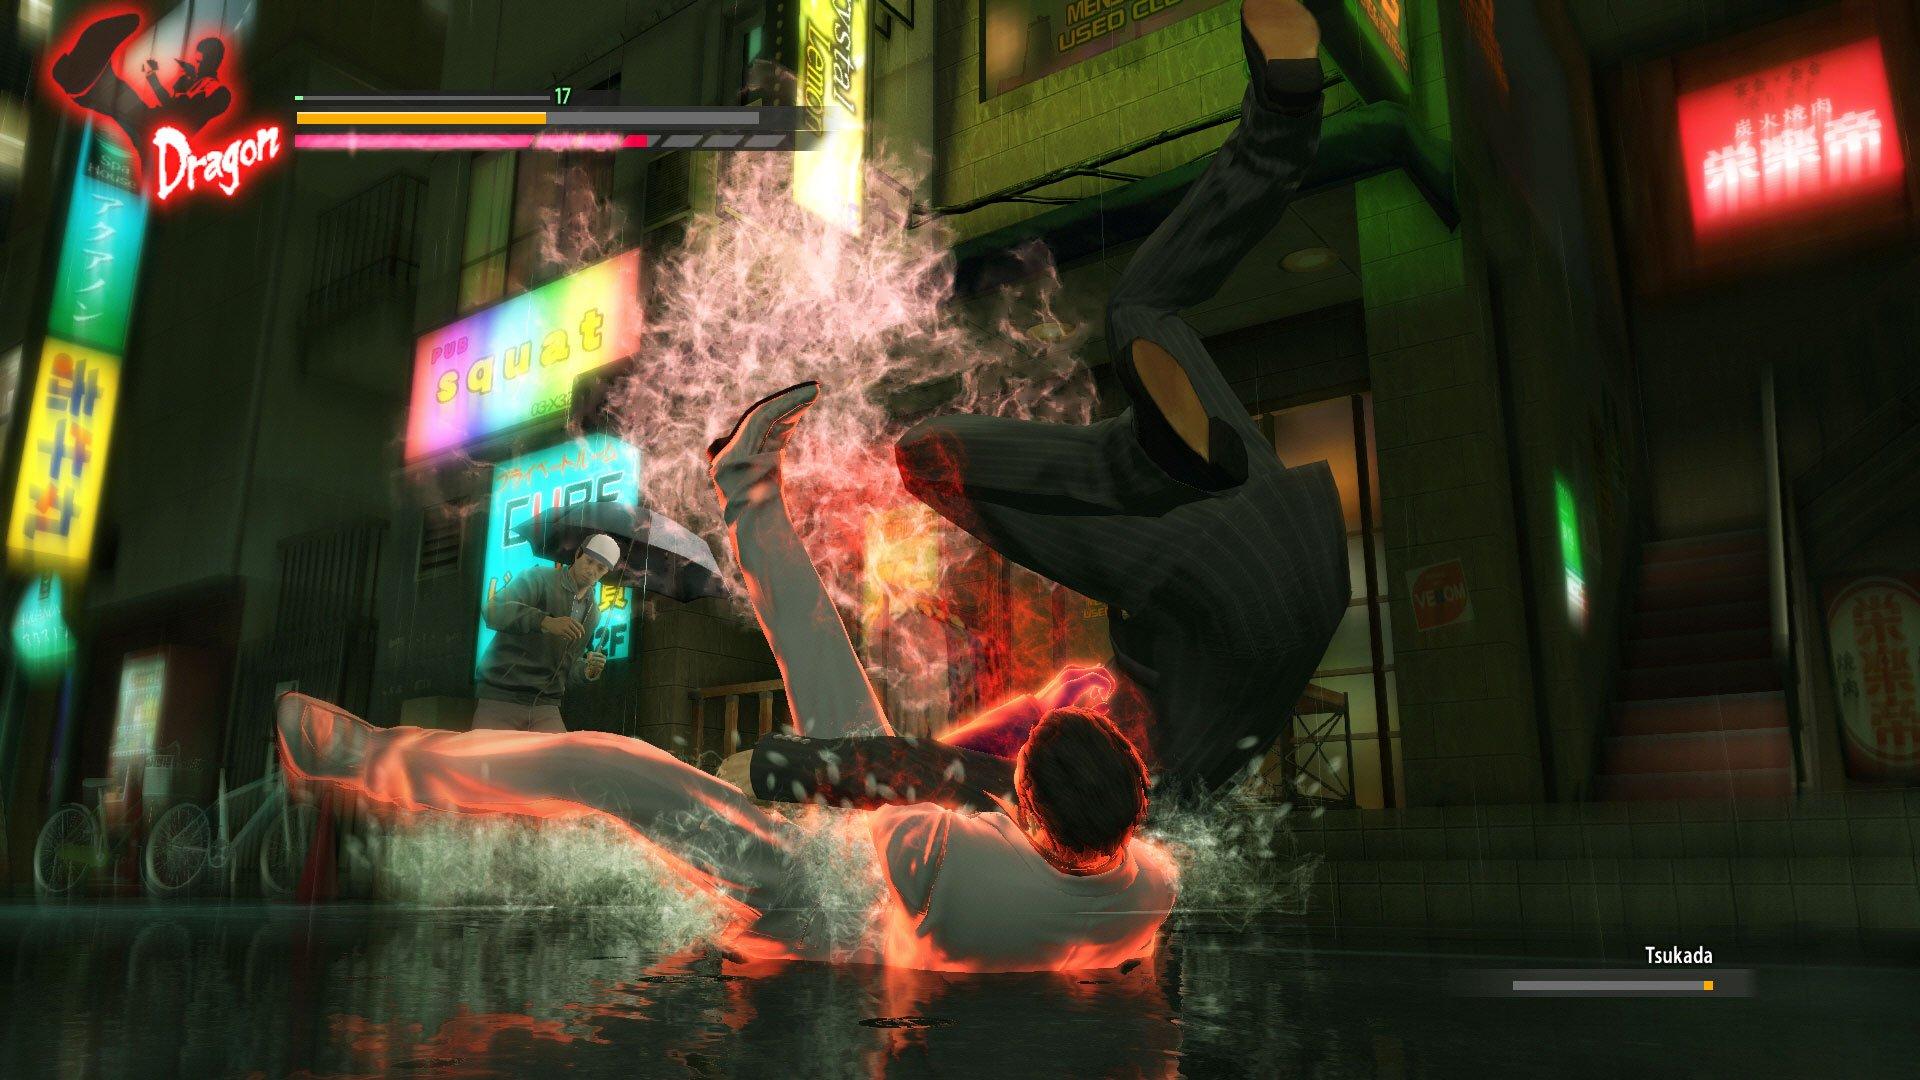 Yakuza Kiwami 2 New Price Edition Playstation 4 PS4 Video Games